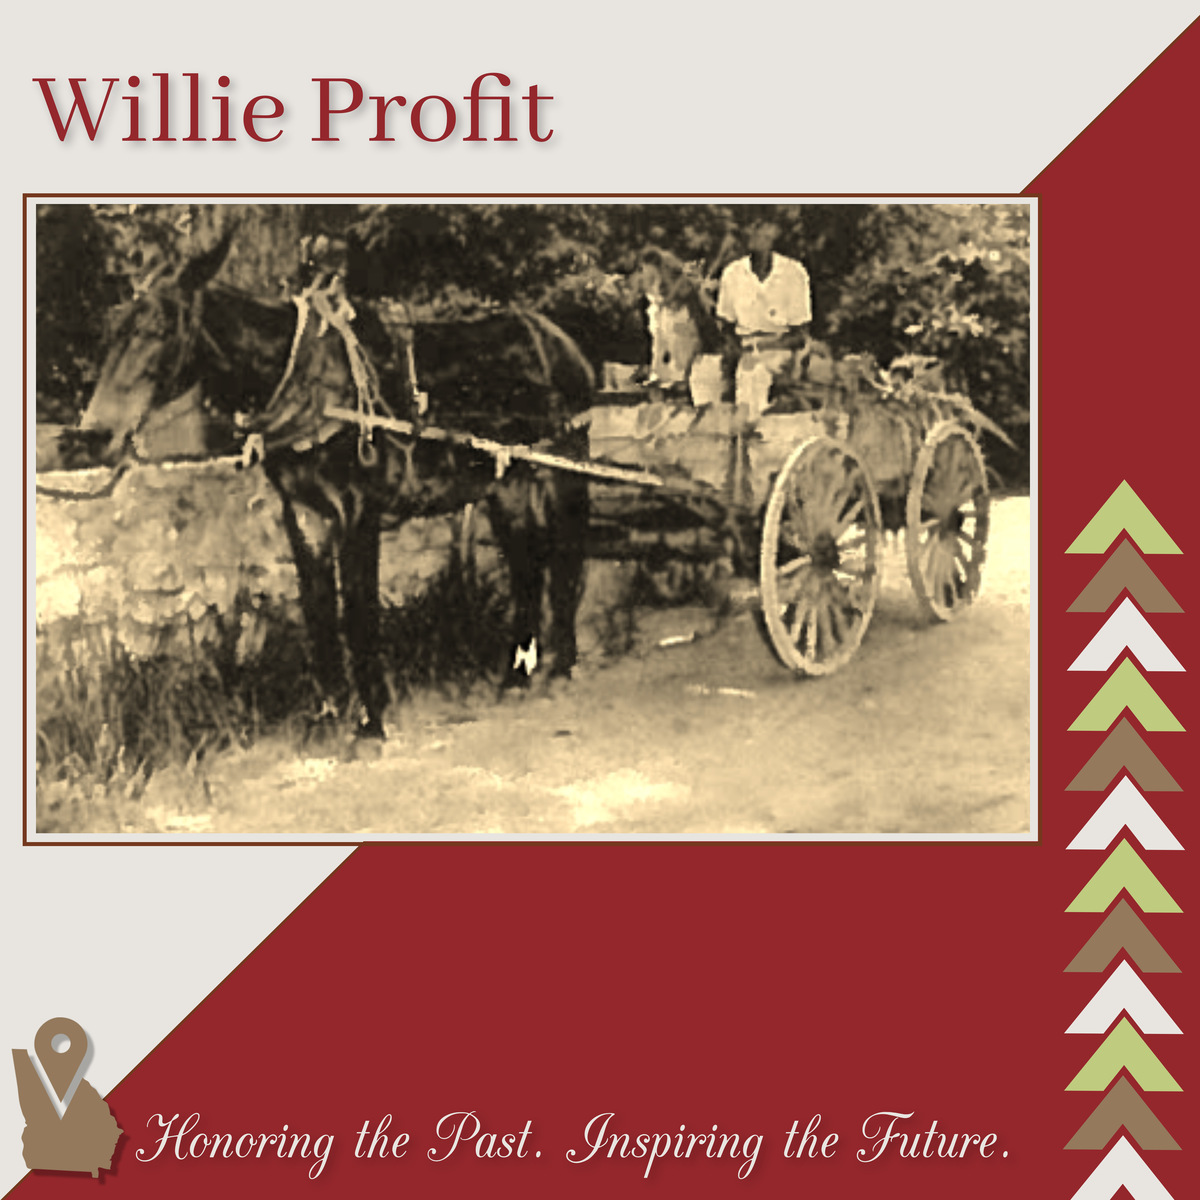 Willie Profit